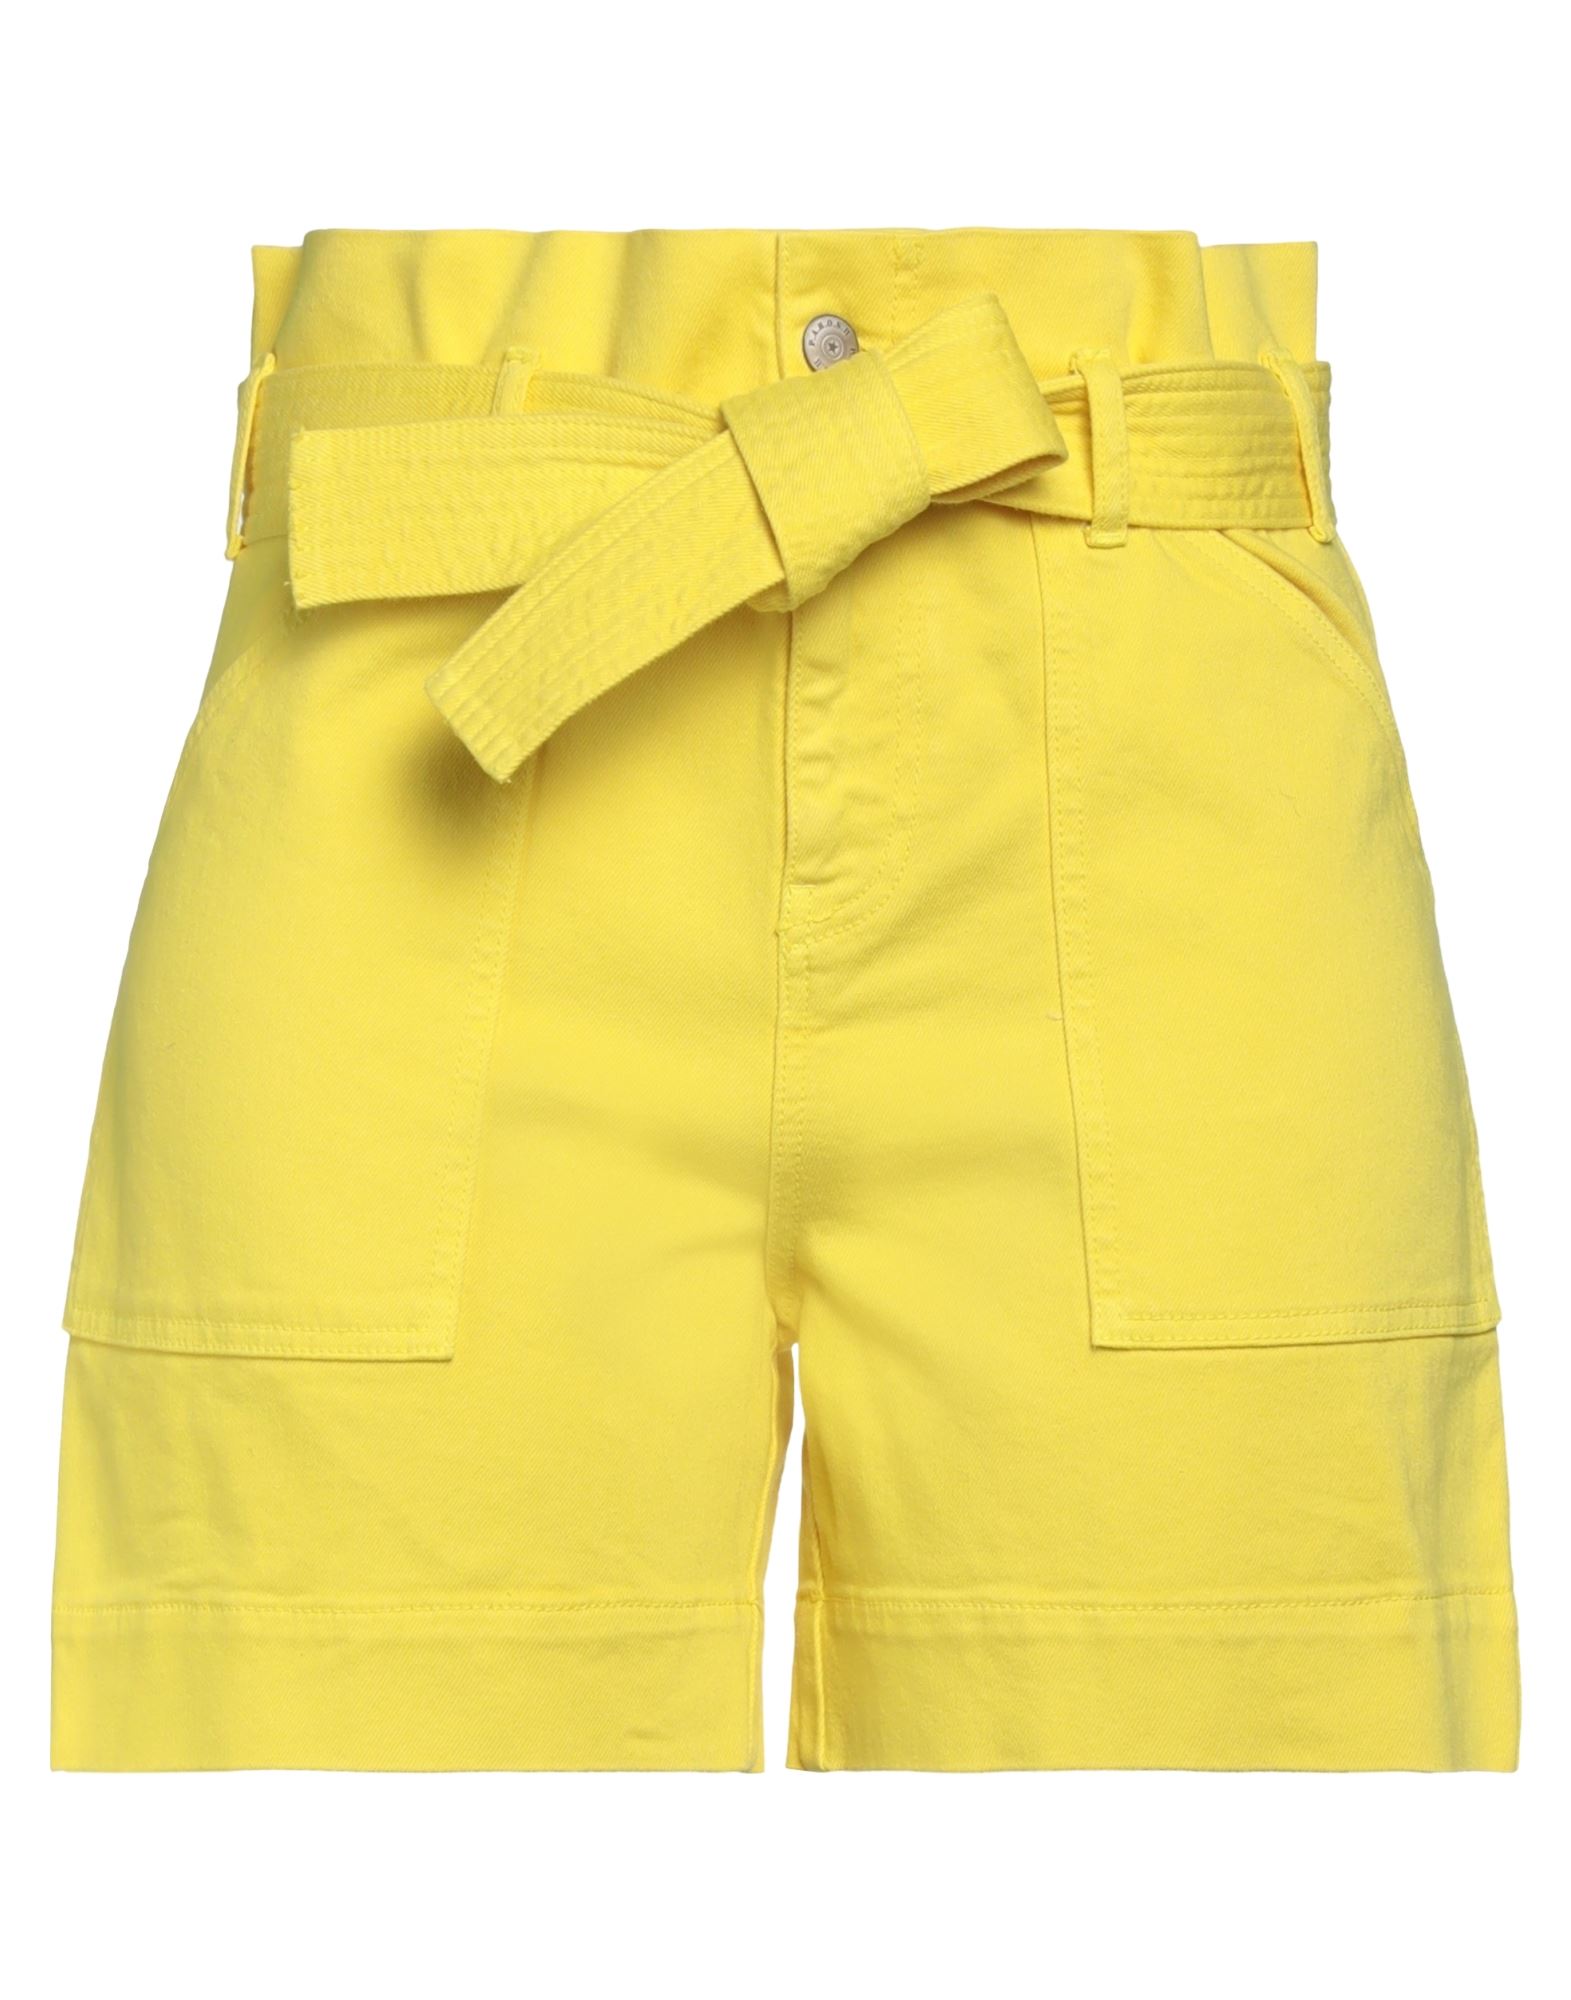 P.a.r.o.s.h P. A.r. O.s. H. Woman Shorts & Bermuda Shorts Yellow Size L Cotton, Elastane